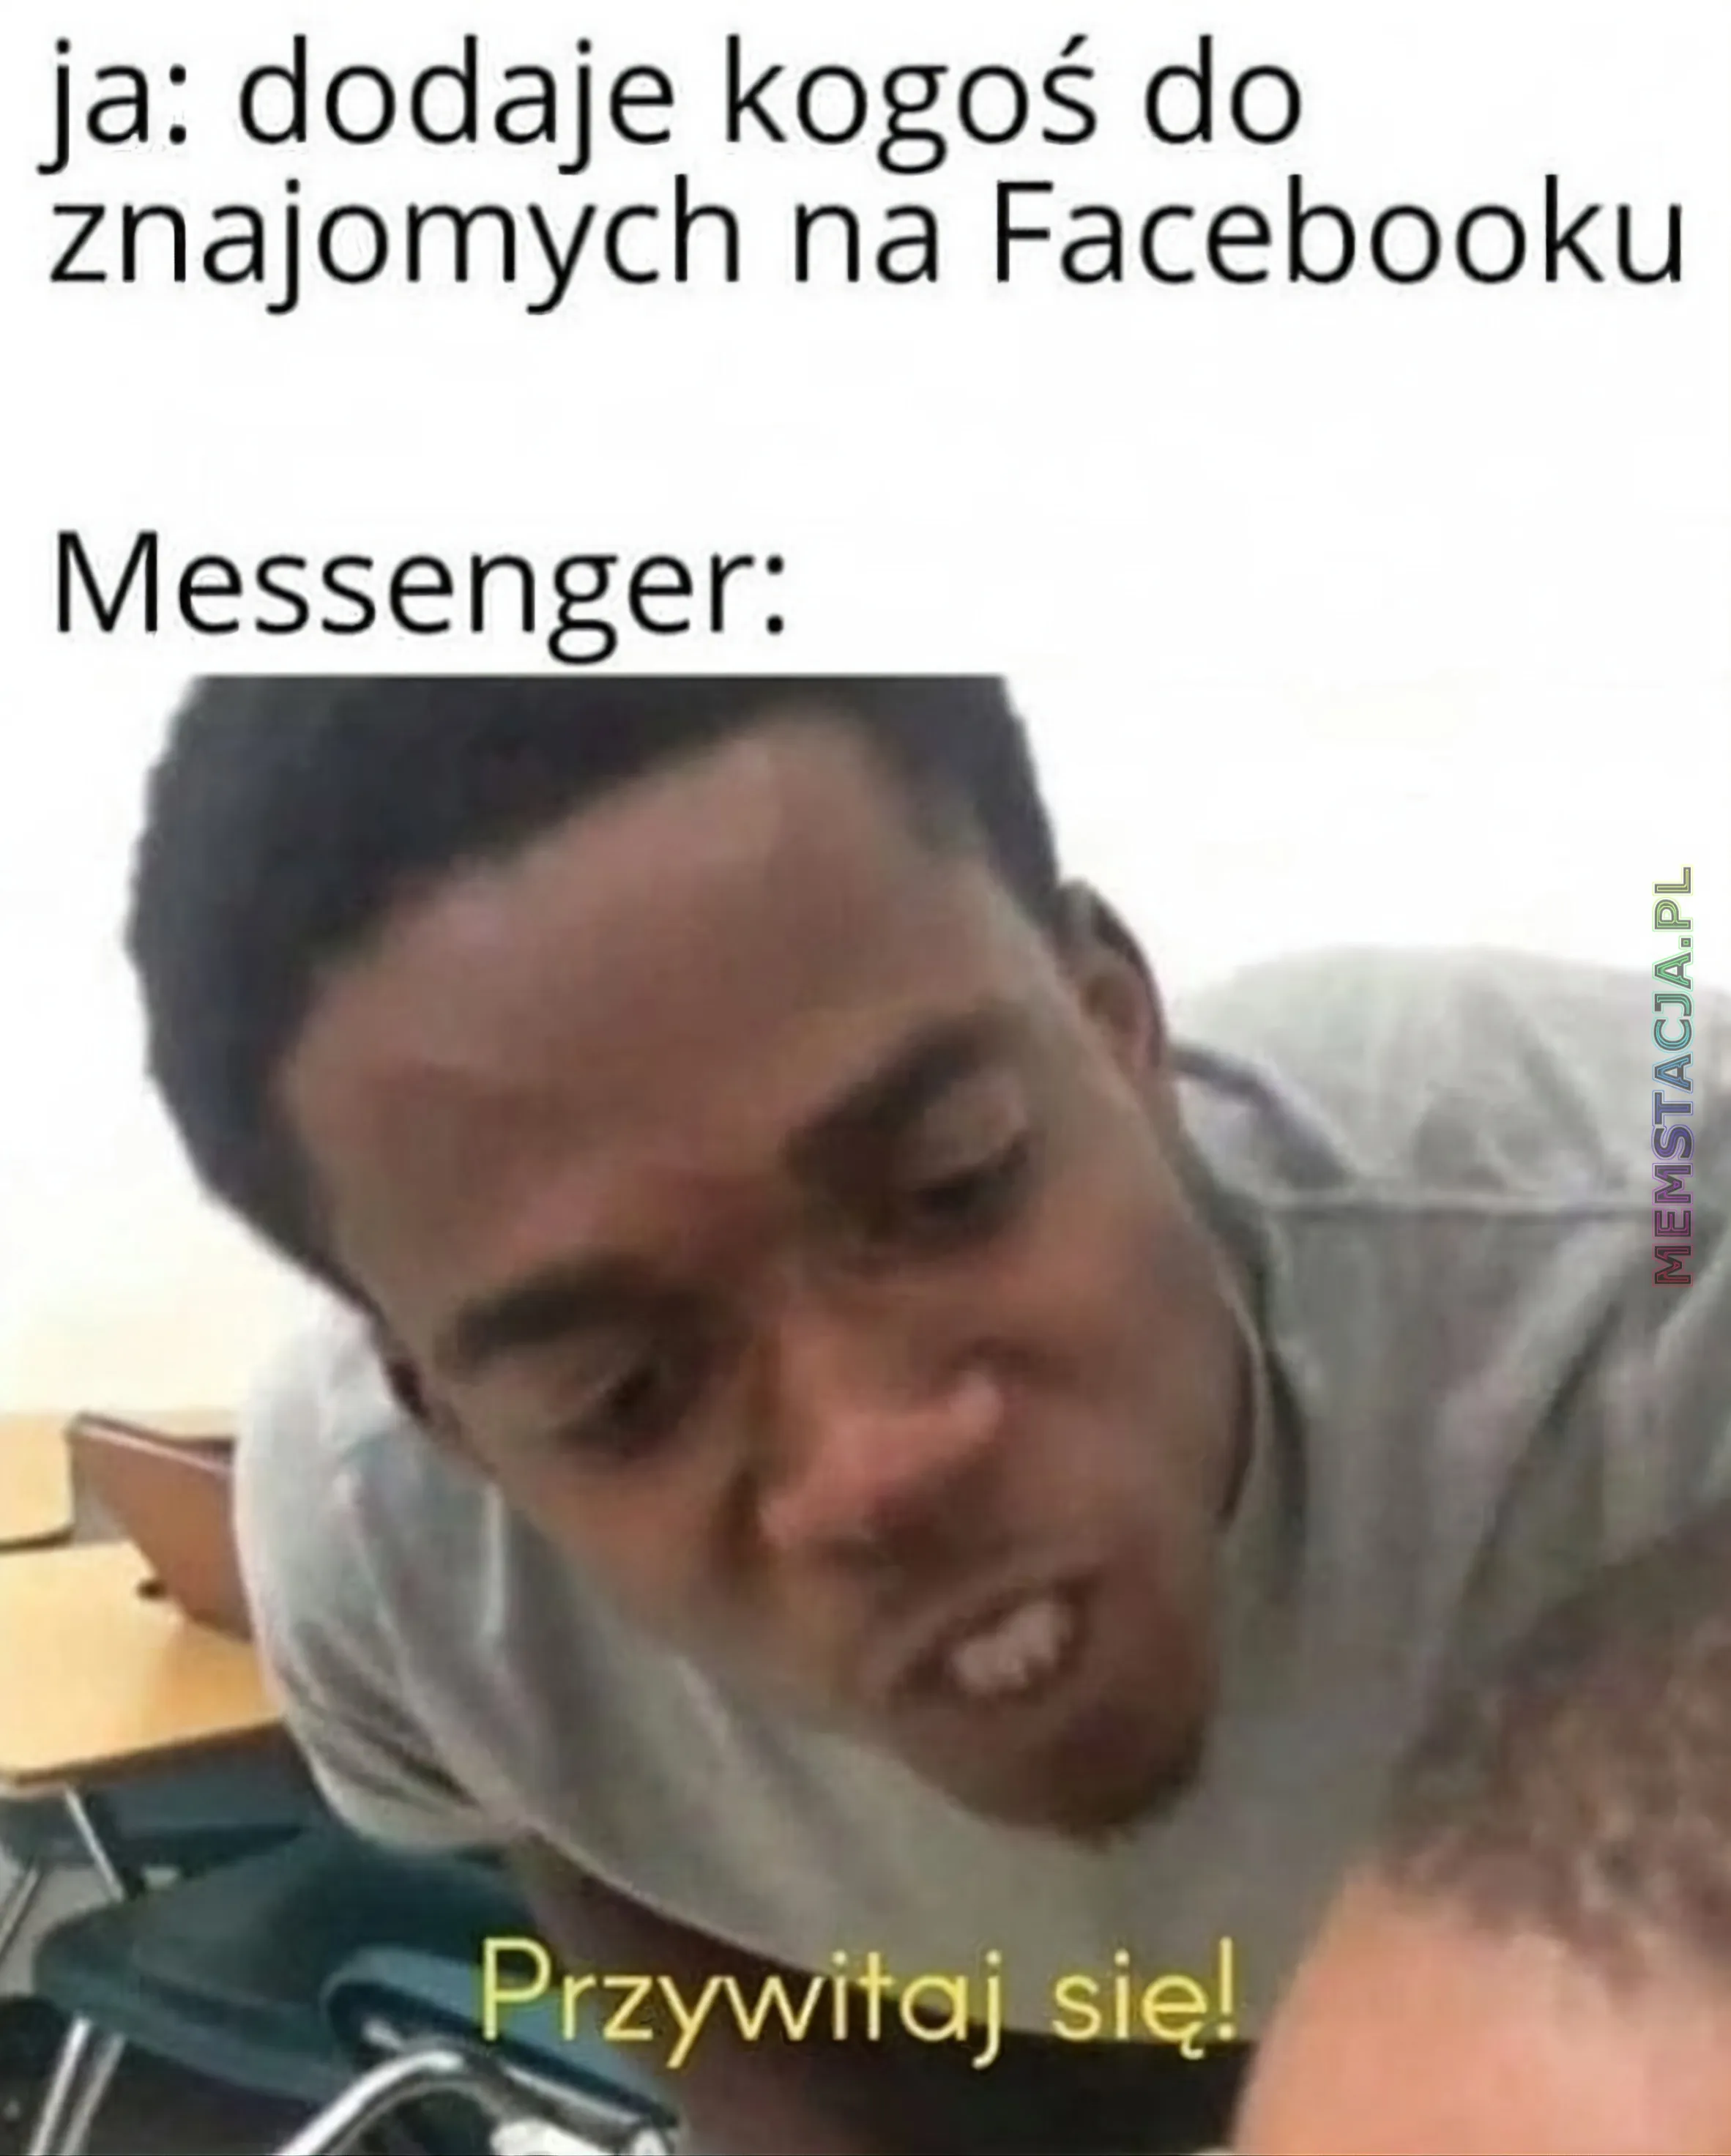 Mem przedstawiający mężczyznę mówiącego z przymuszeniem - 'ja: dodaję kogoś do znajomych na Facebooku" - "Messenger: Przywitaj się!"